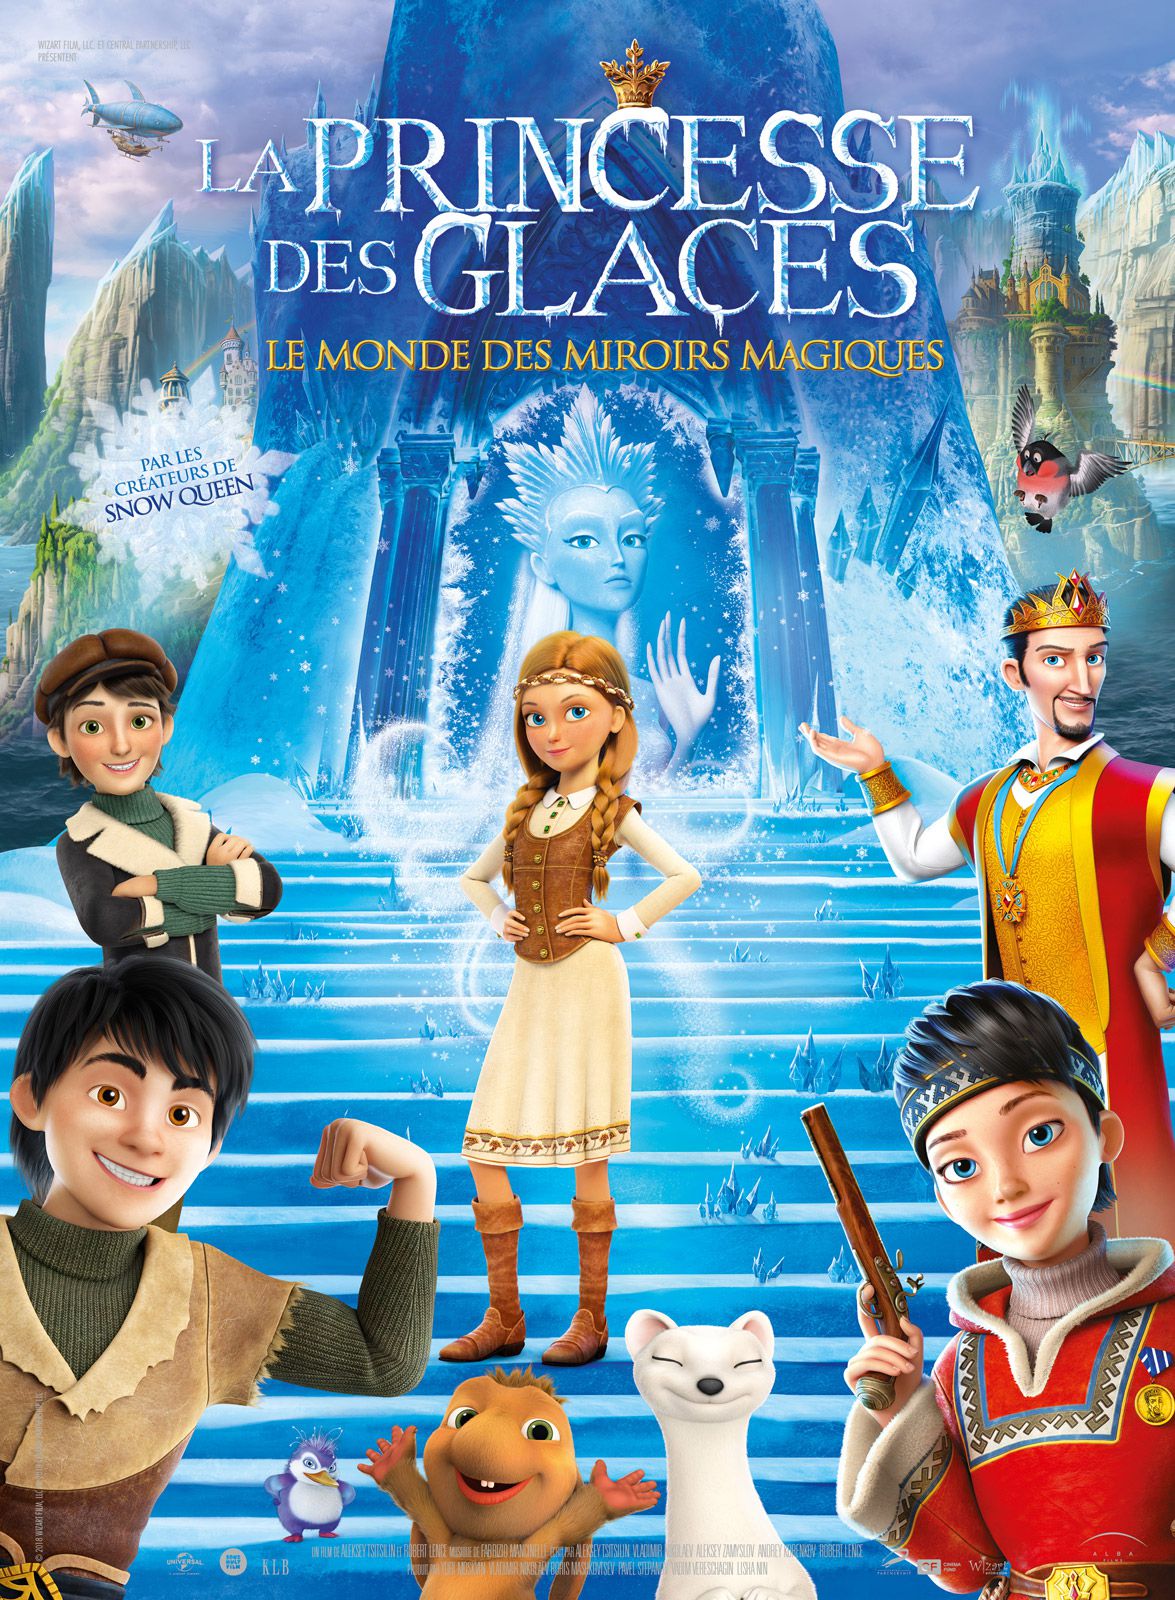 La Princesse des glaces, le monde des miroirs magiques - Long-métrage d'animation (2019) streaming VF gratuit complet